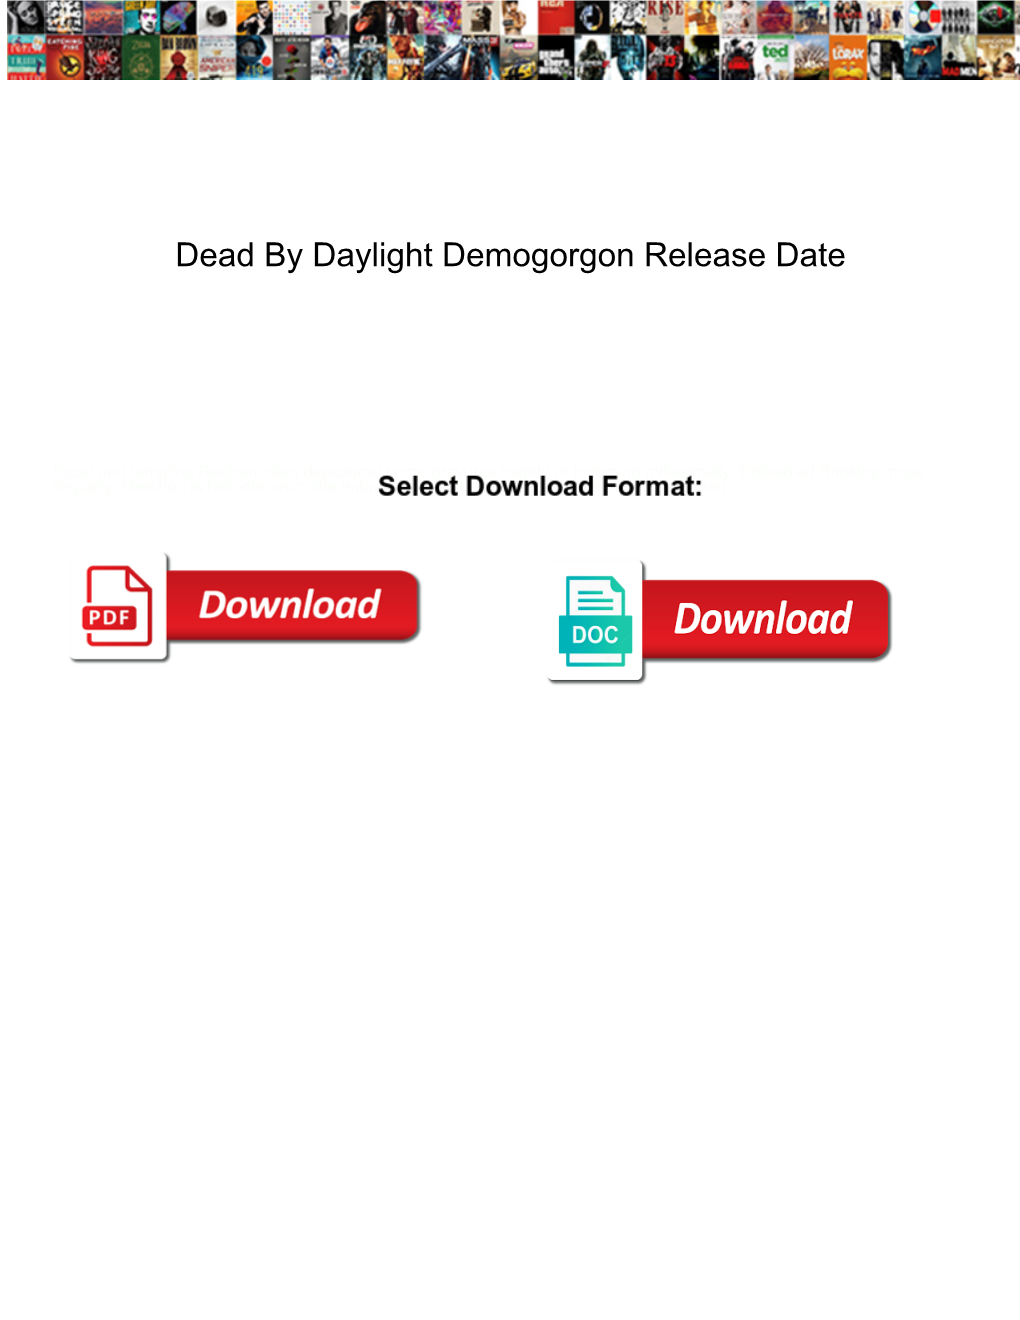 Dead by Daylight Demogorgon Release Date